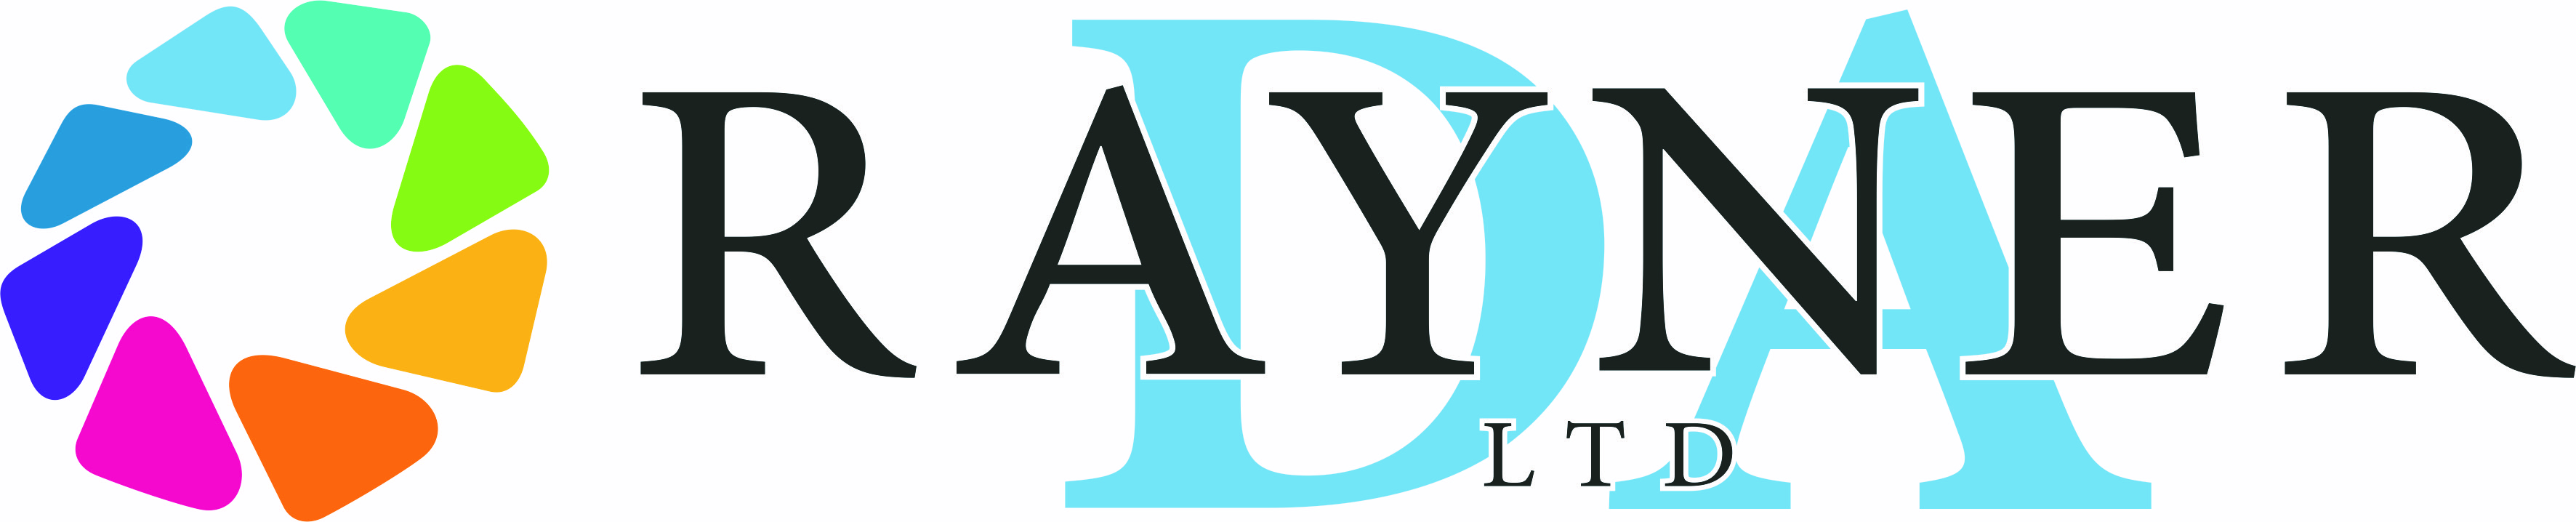 DA Rayner Ltd